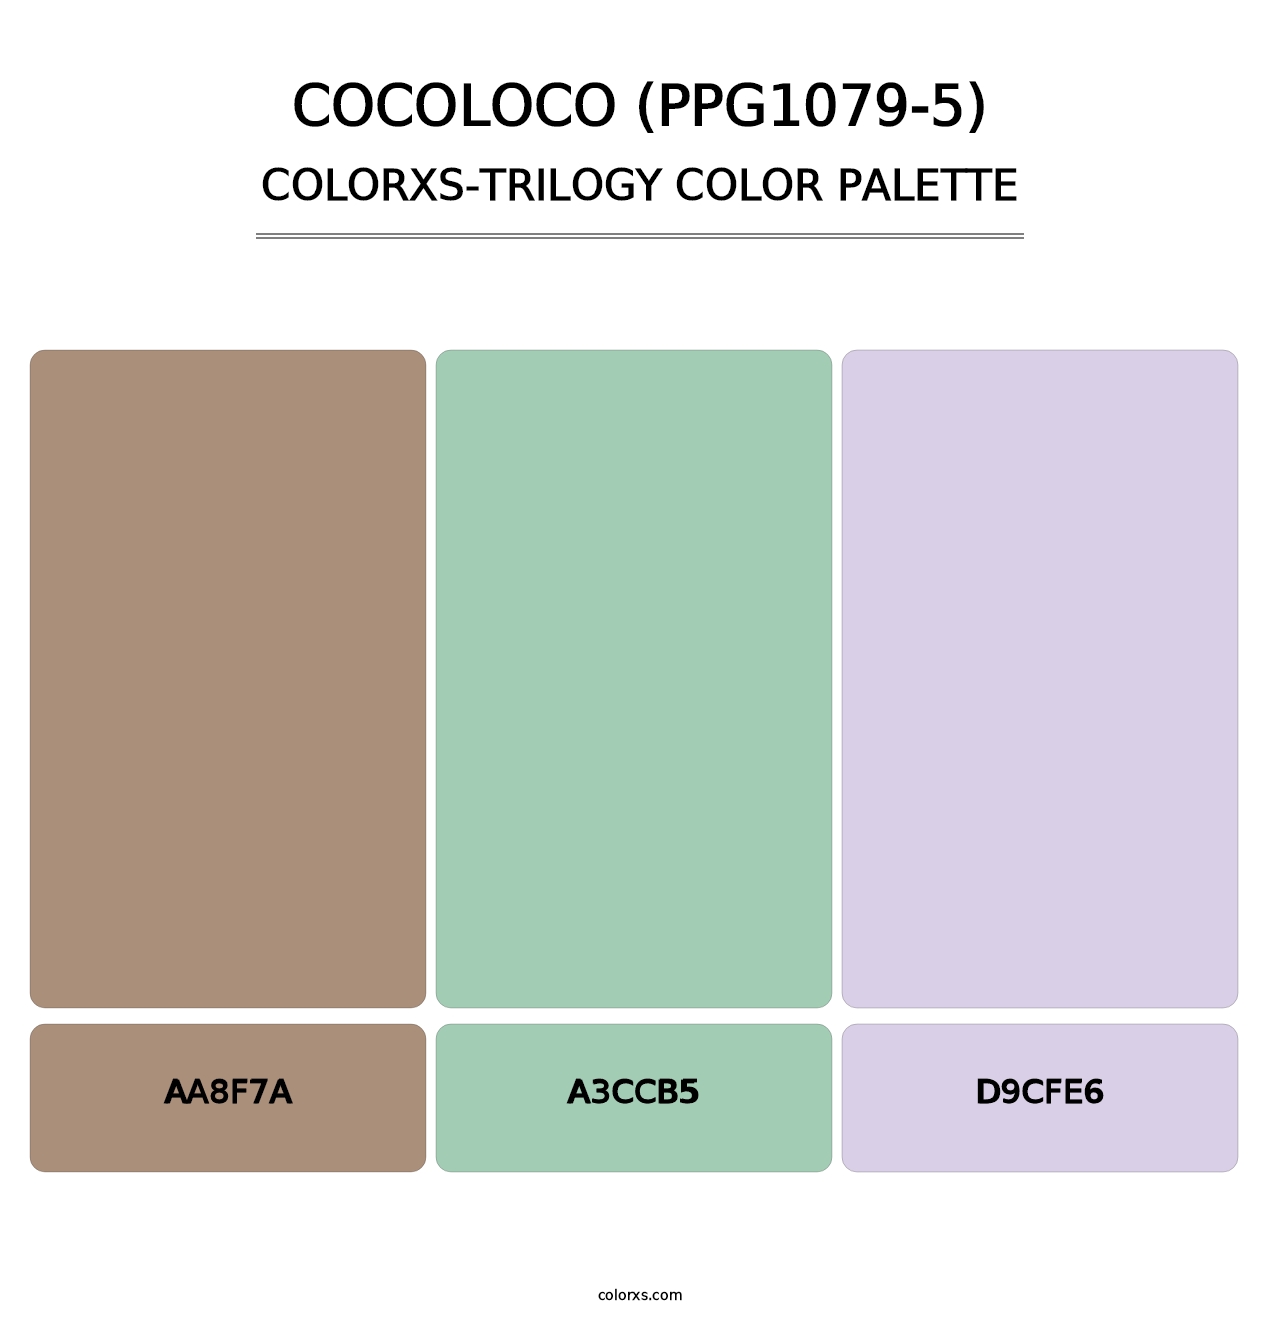 Cocoloco (PPG1079-5) - Colorxs Trilogy Palette